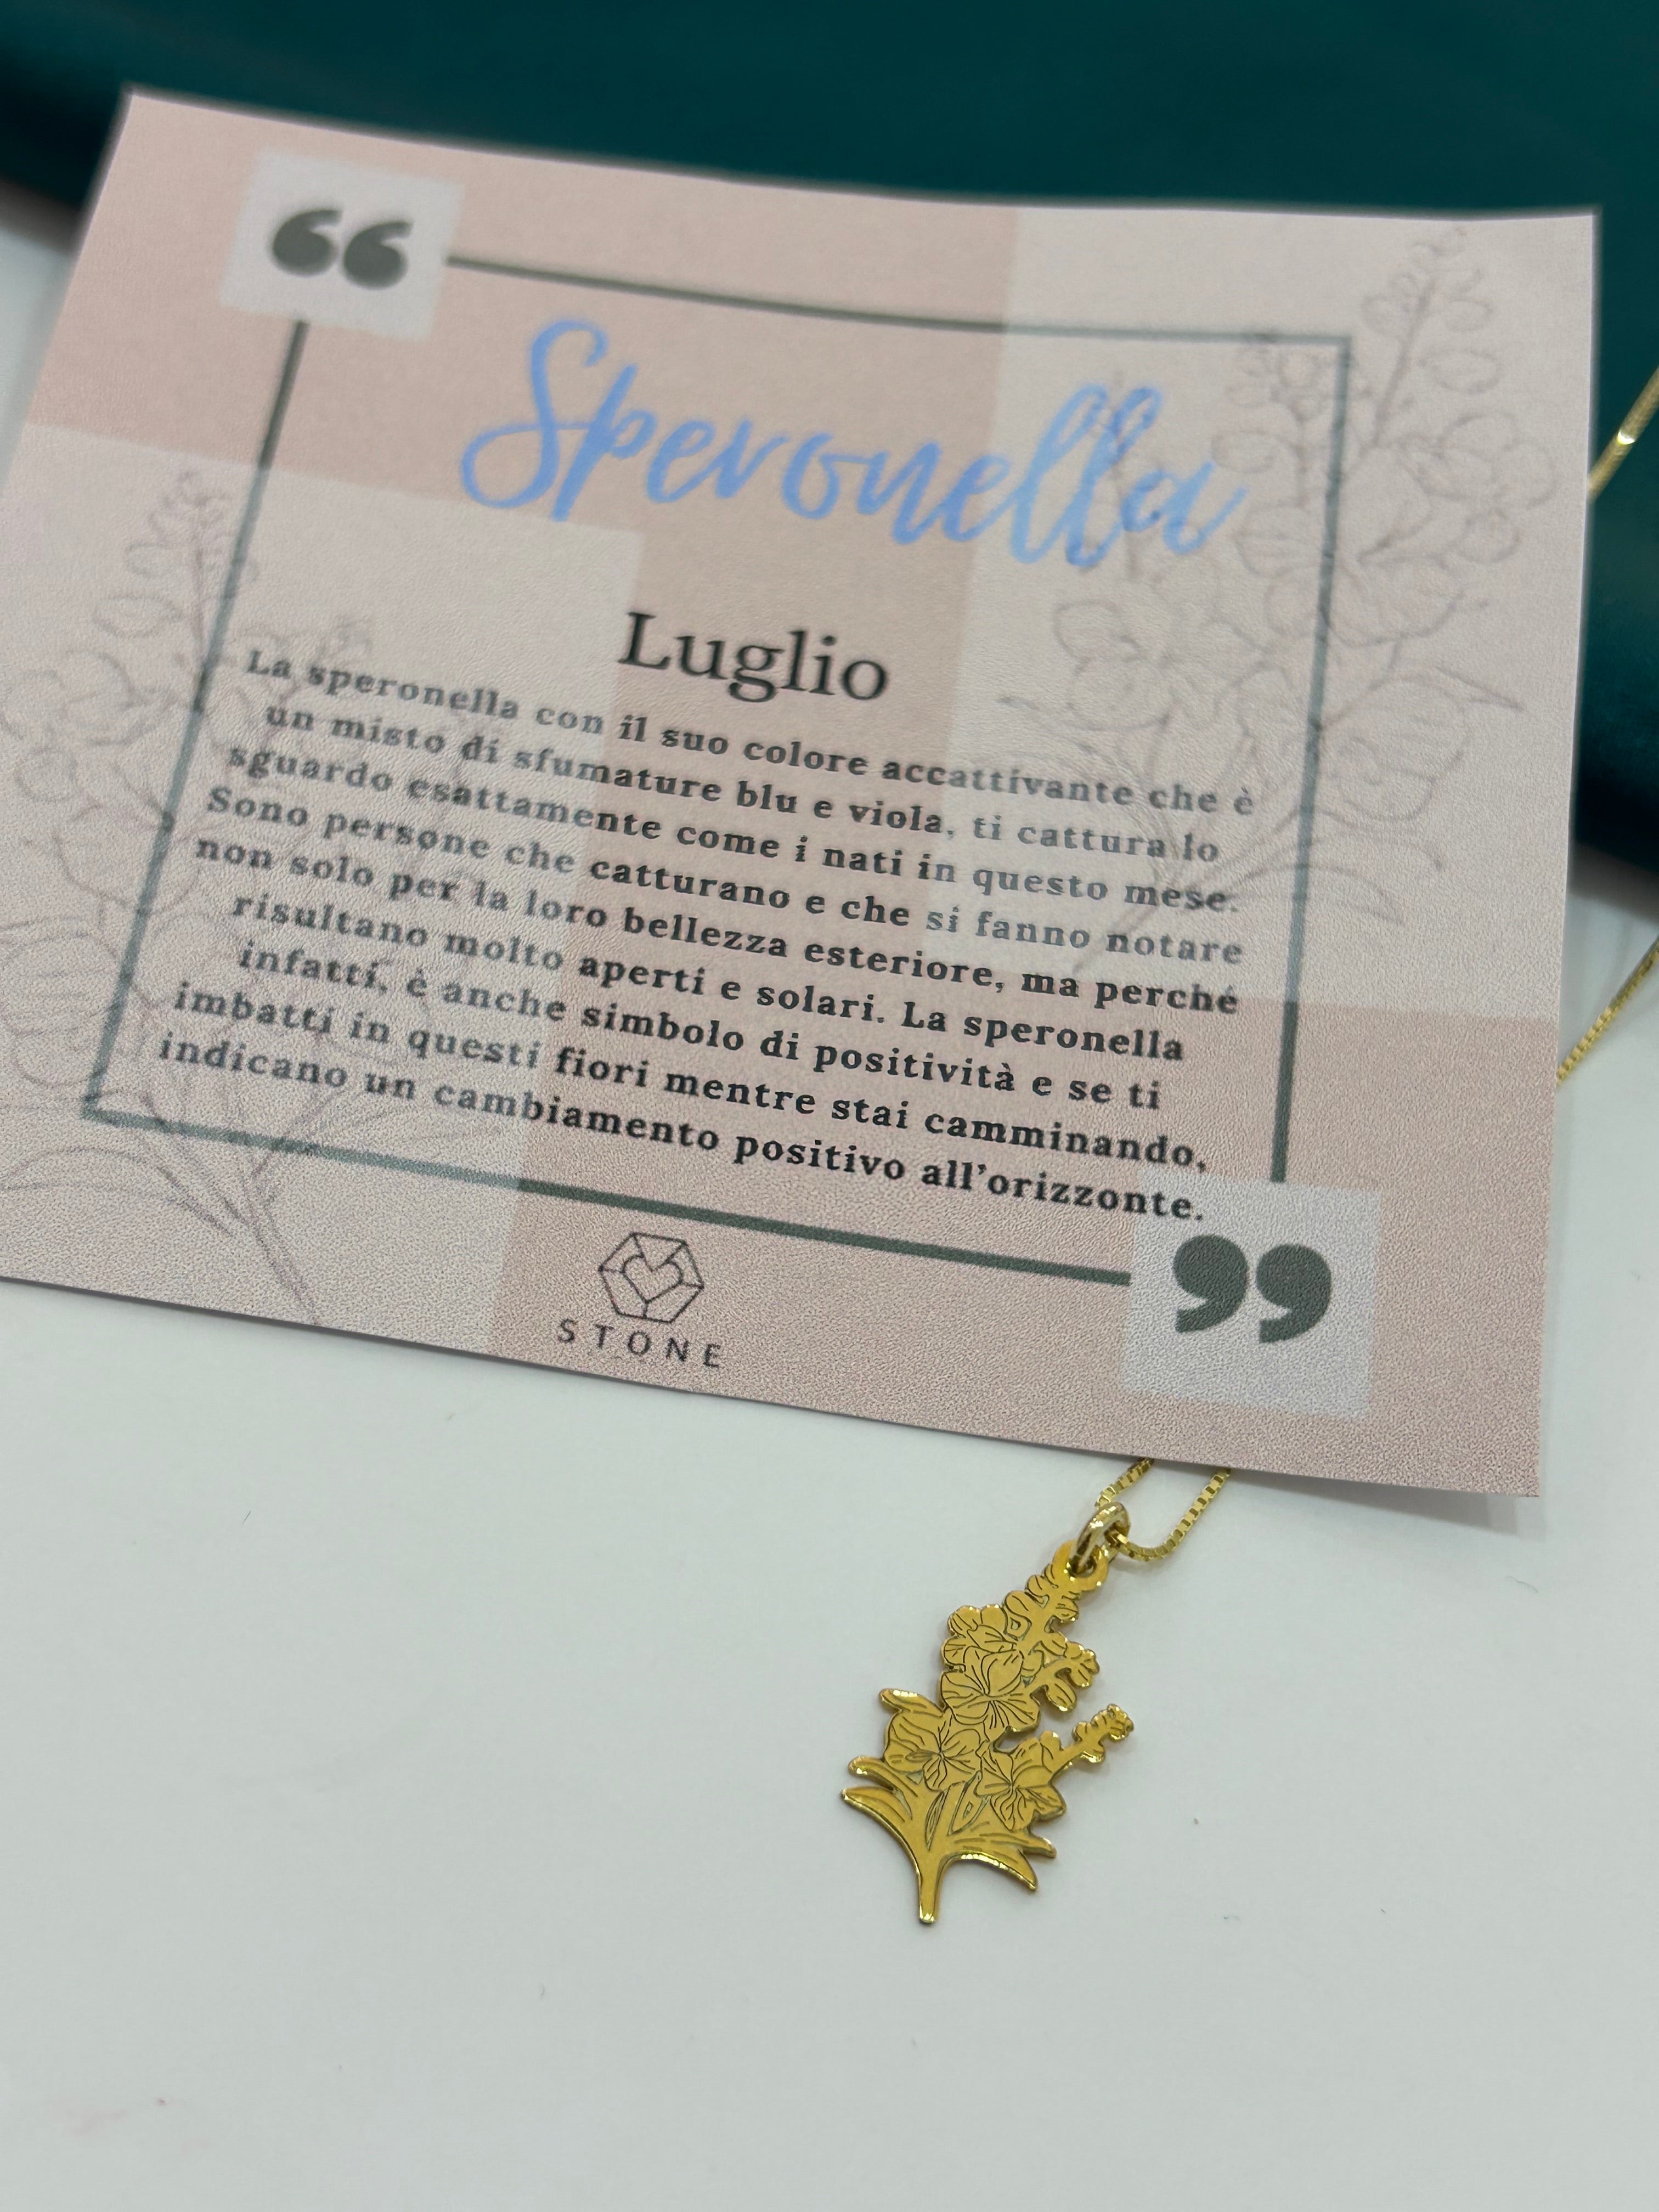 Speronella Luglio